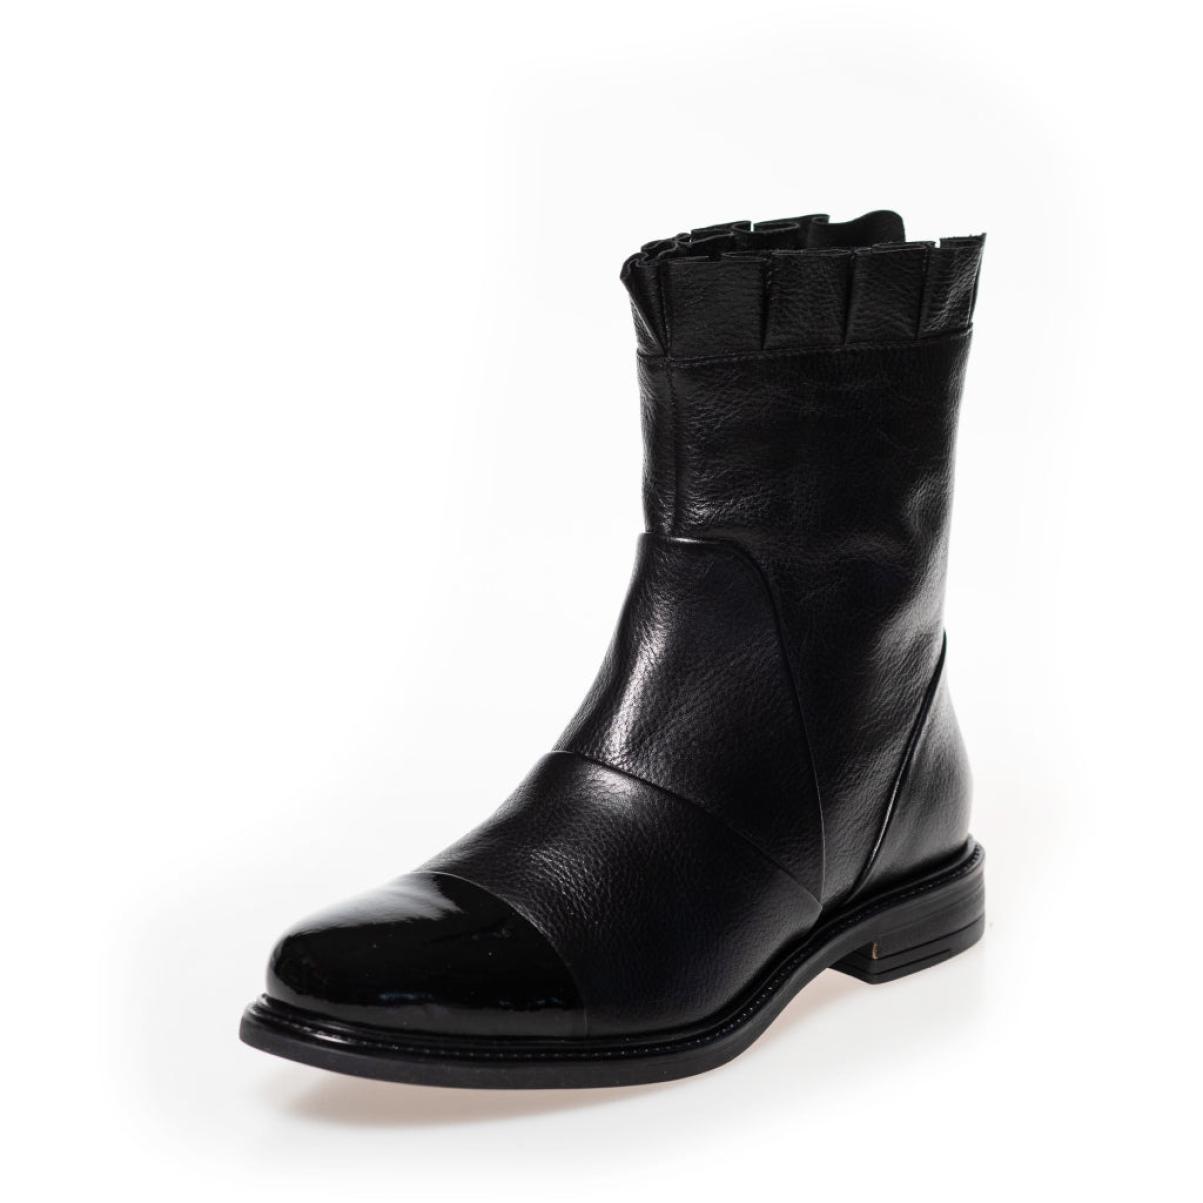 Ankle Boots Margaret - Black W/Patent Toe Top Copenhagen Shoes Women - 2